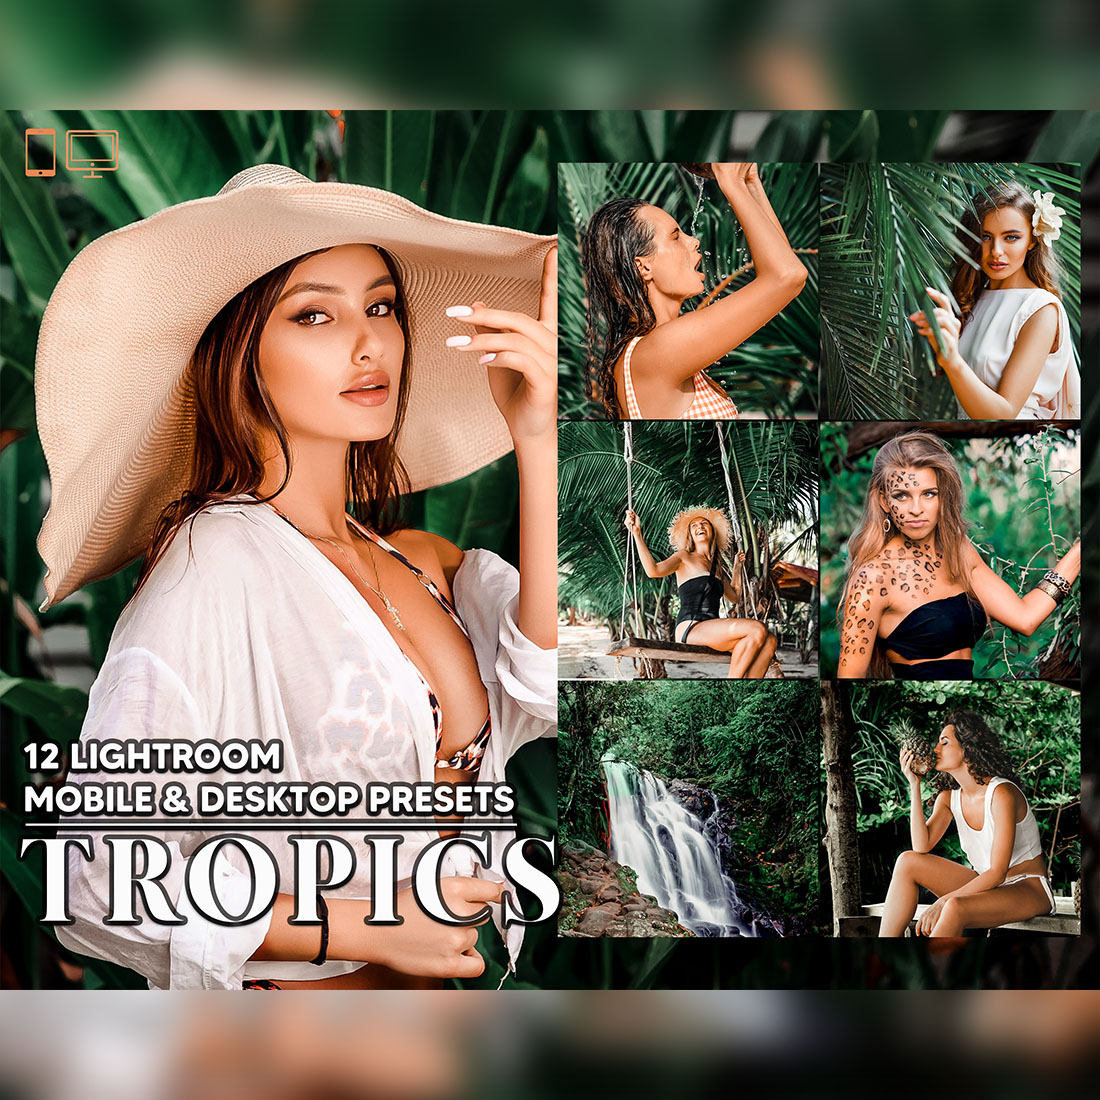 12 Tropics Lightroom Presets, Tropical Wonder Mobile Preset, Jungle Desktop LR Filter DNG Lifestyle Theme For Blogger Portrait Instagram cover image.